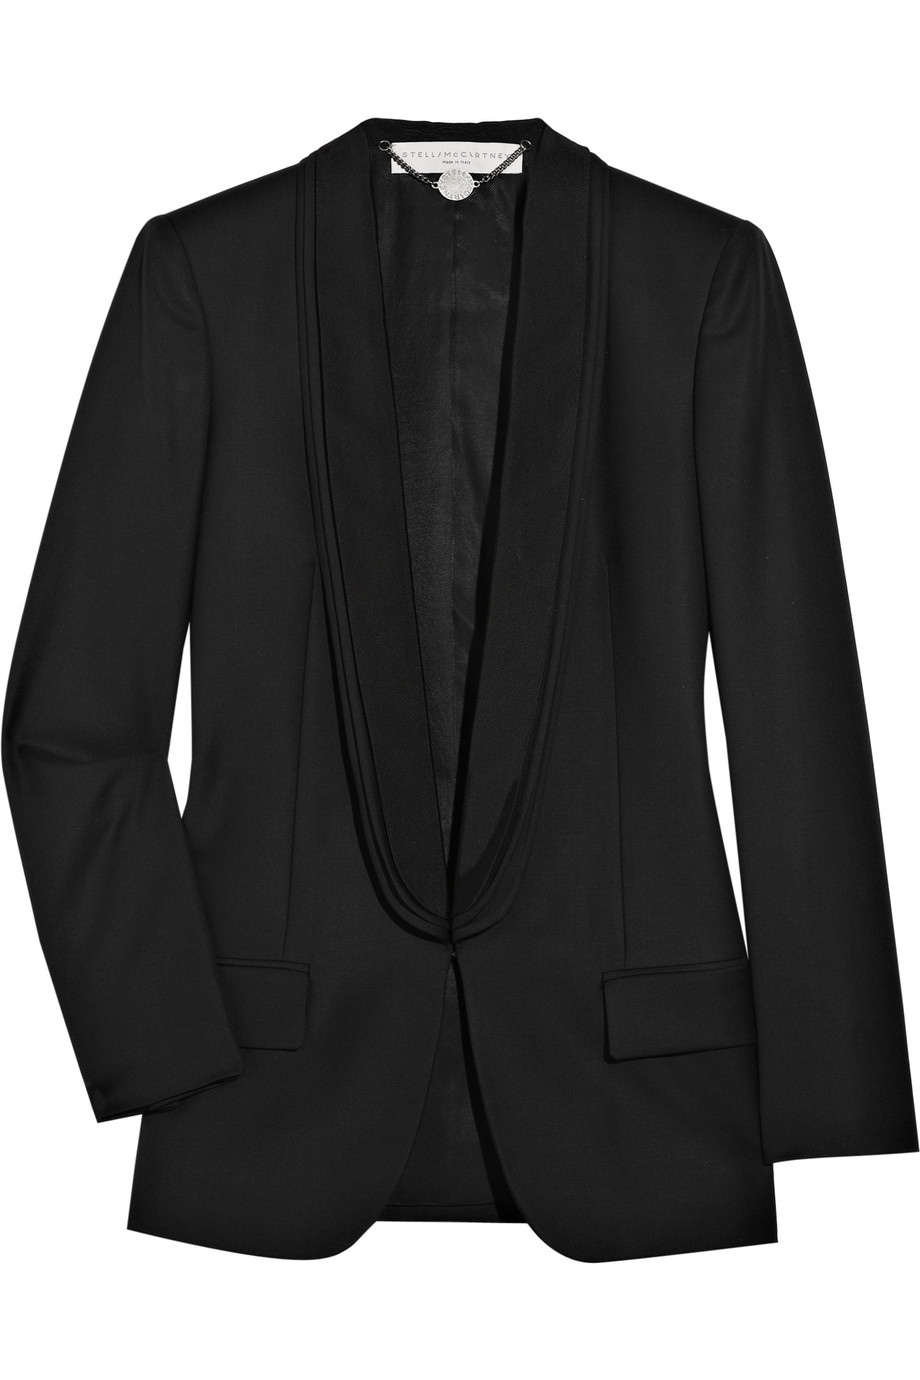 Stella McCartney Wool-twill Tuxedo Jacket in Black - Lyst